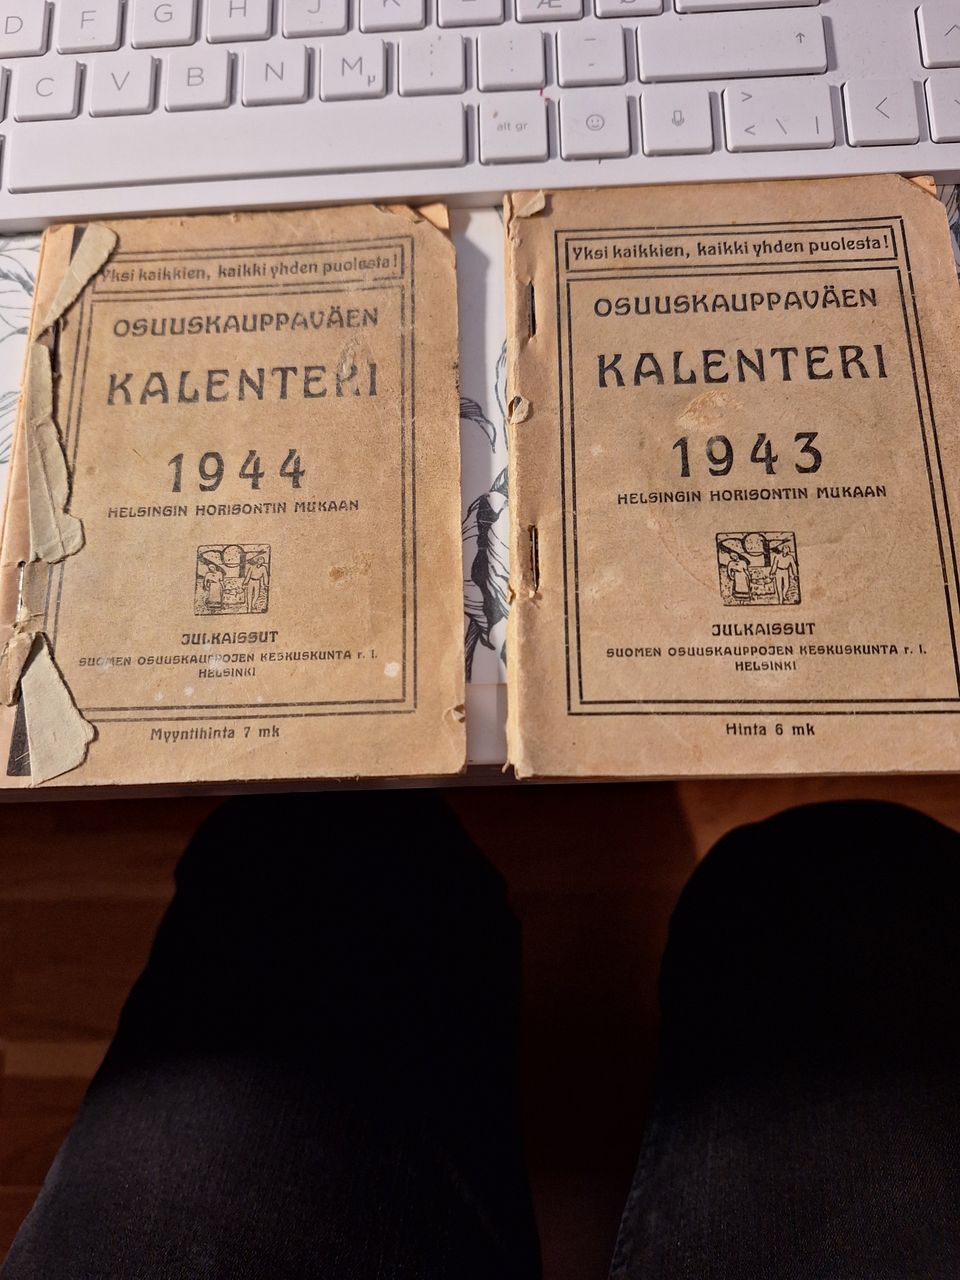 Osuuskauppaväen kalenterit v. 1943 ja 1944